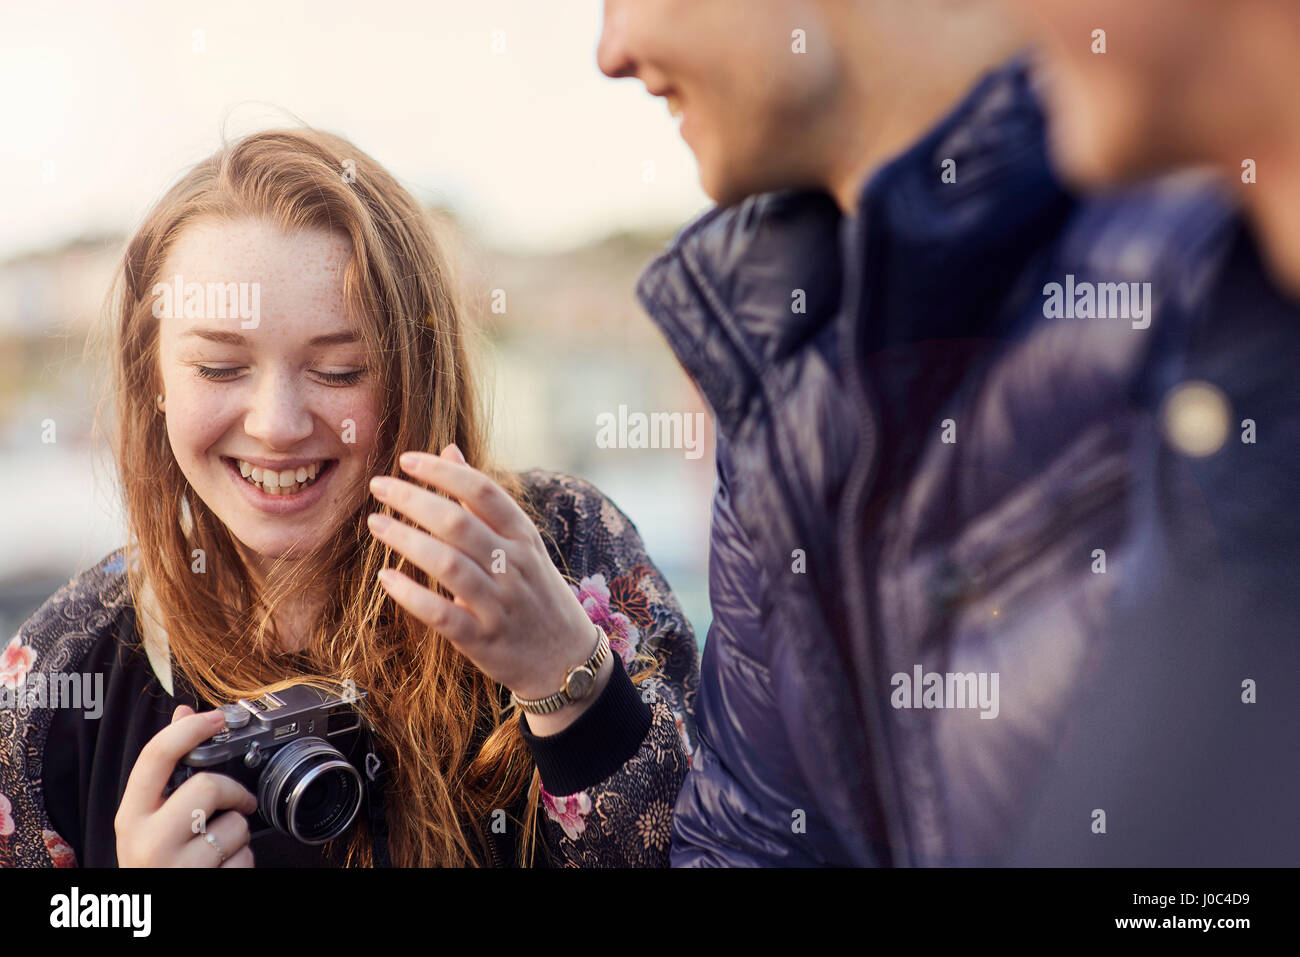 Drei Freunde im Freien, junge Frau mit Kamera, lachen, Bristol, UK Stockfoto